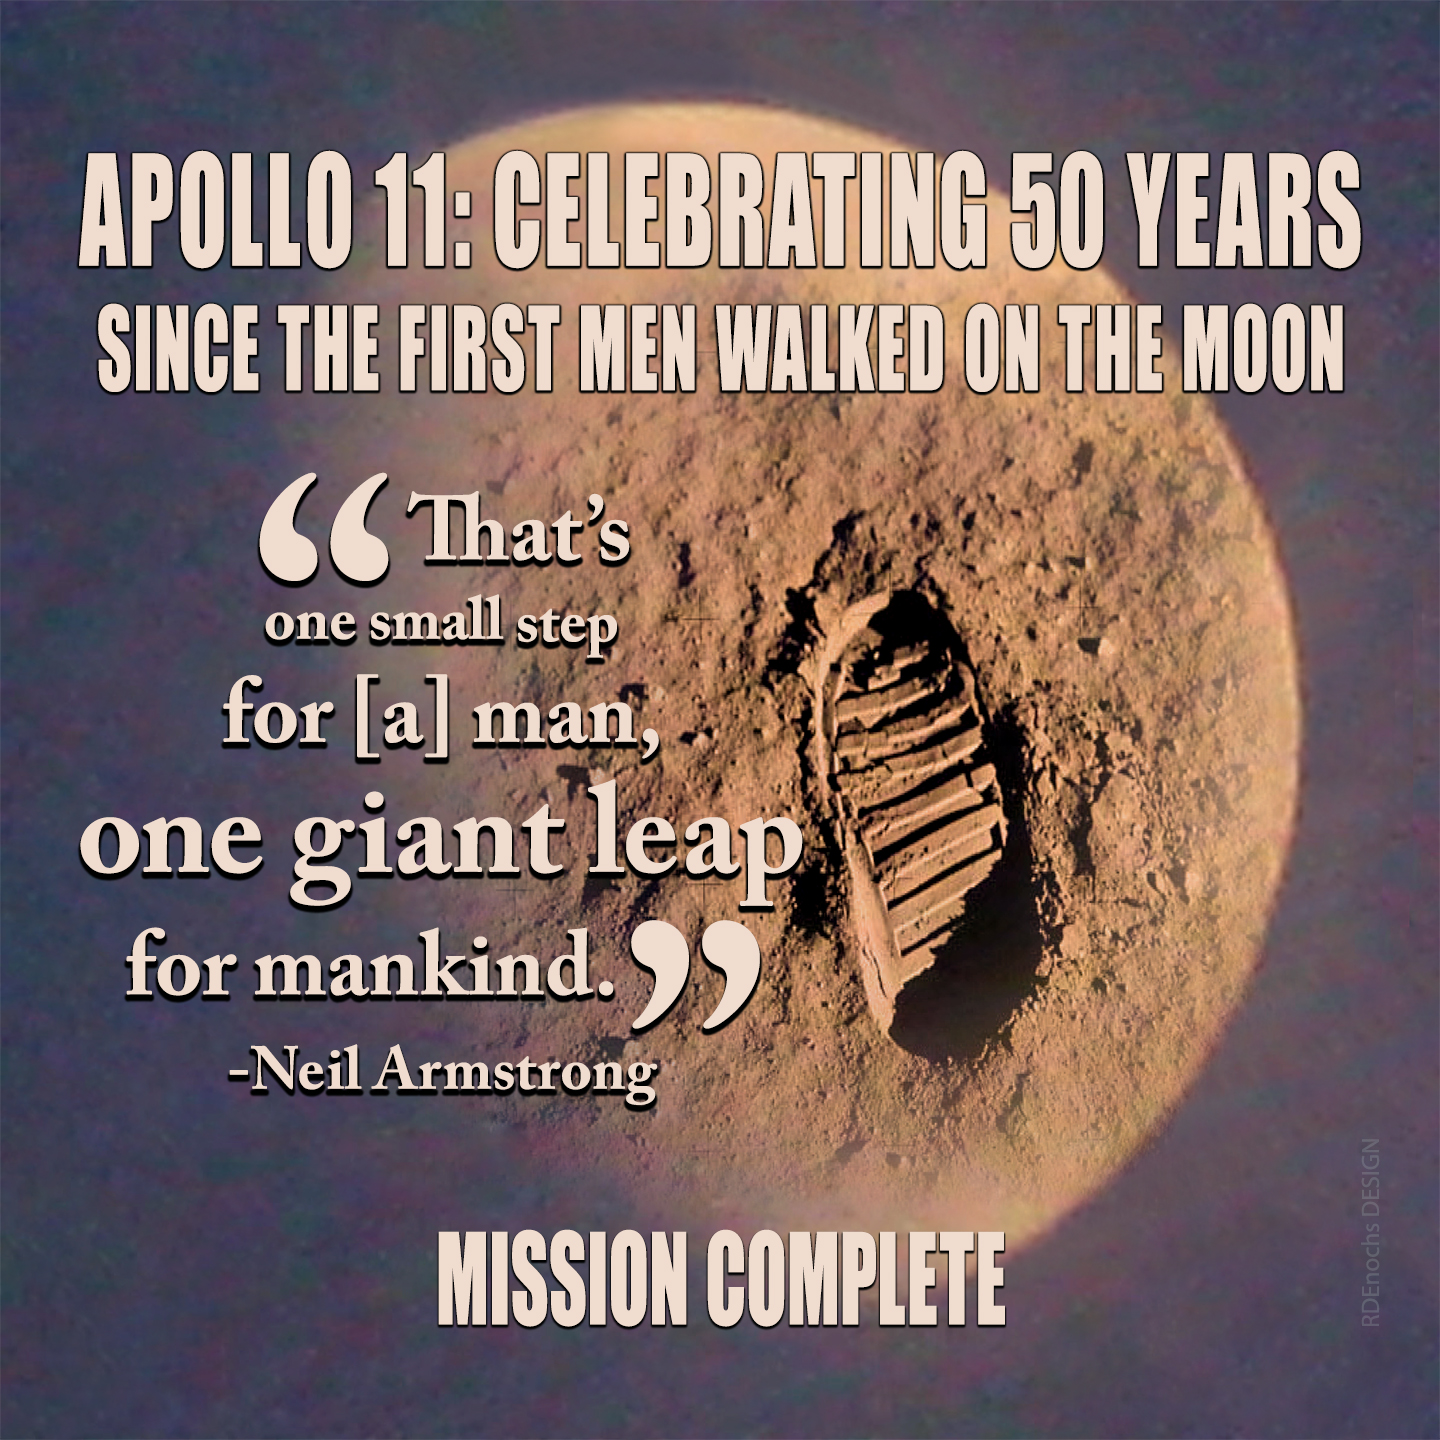 Apollo 11 Celebrates 50